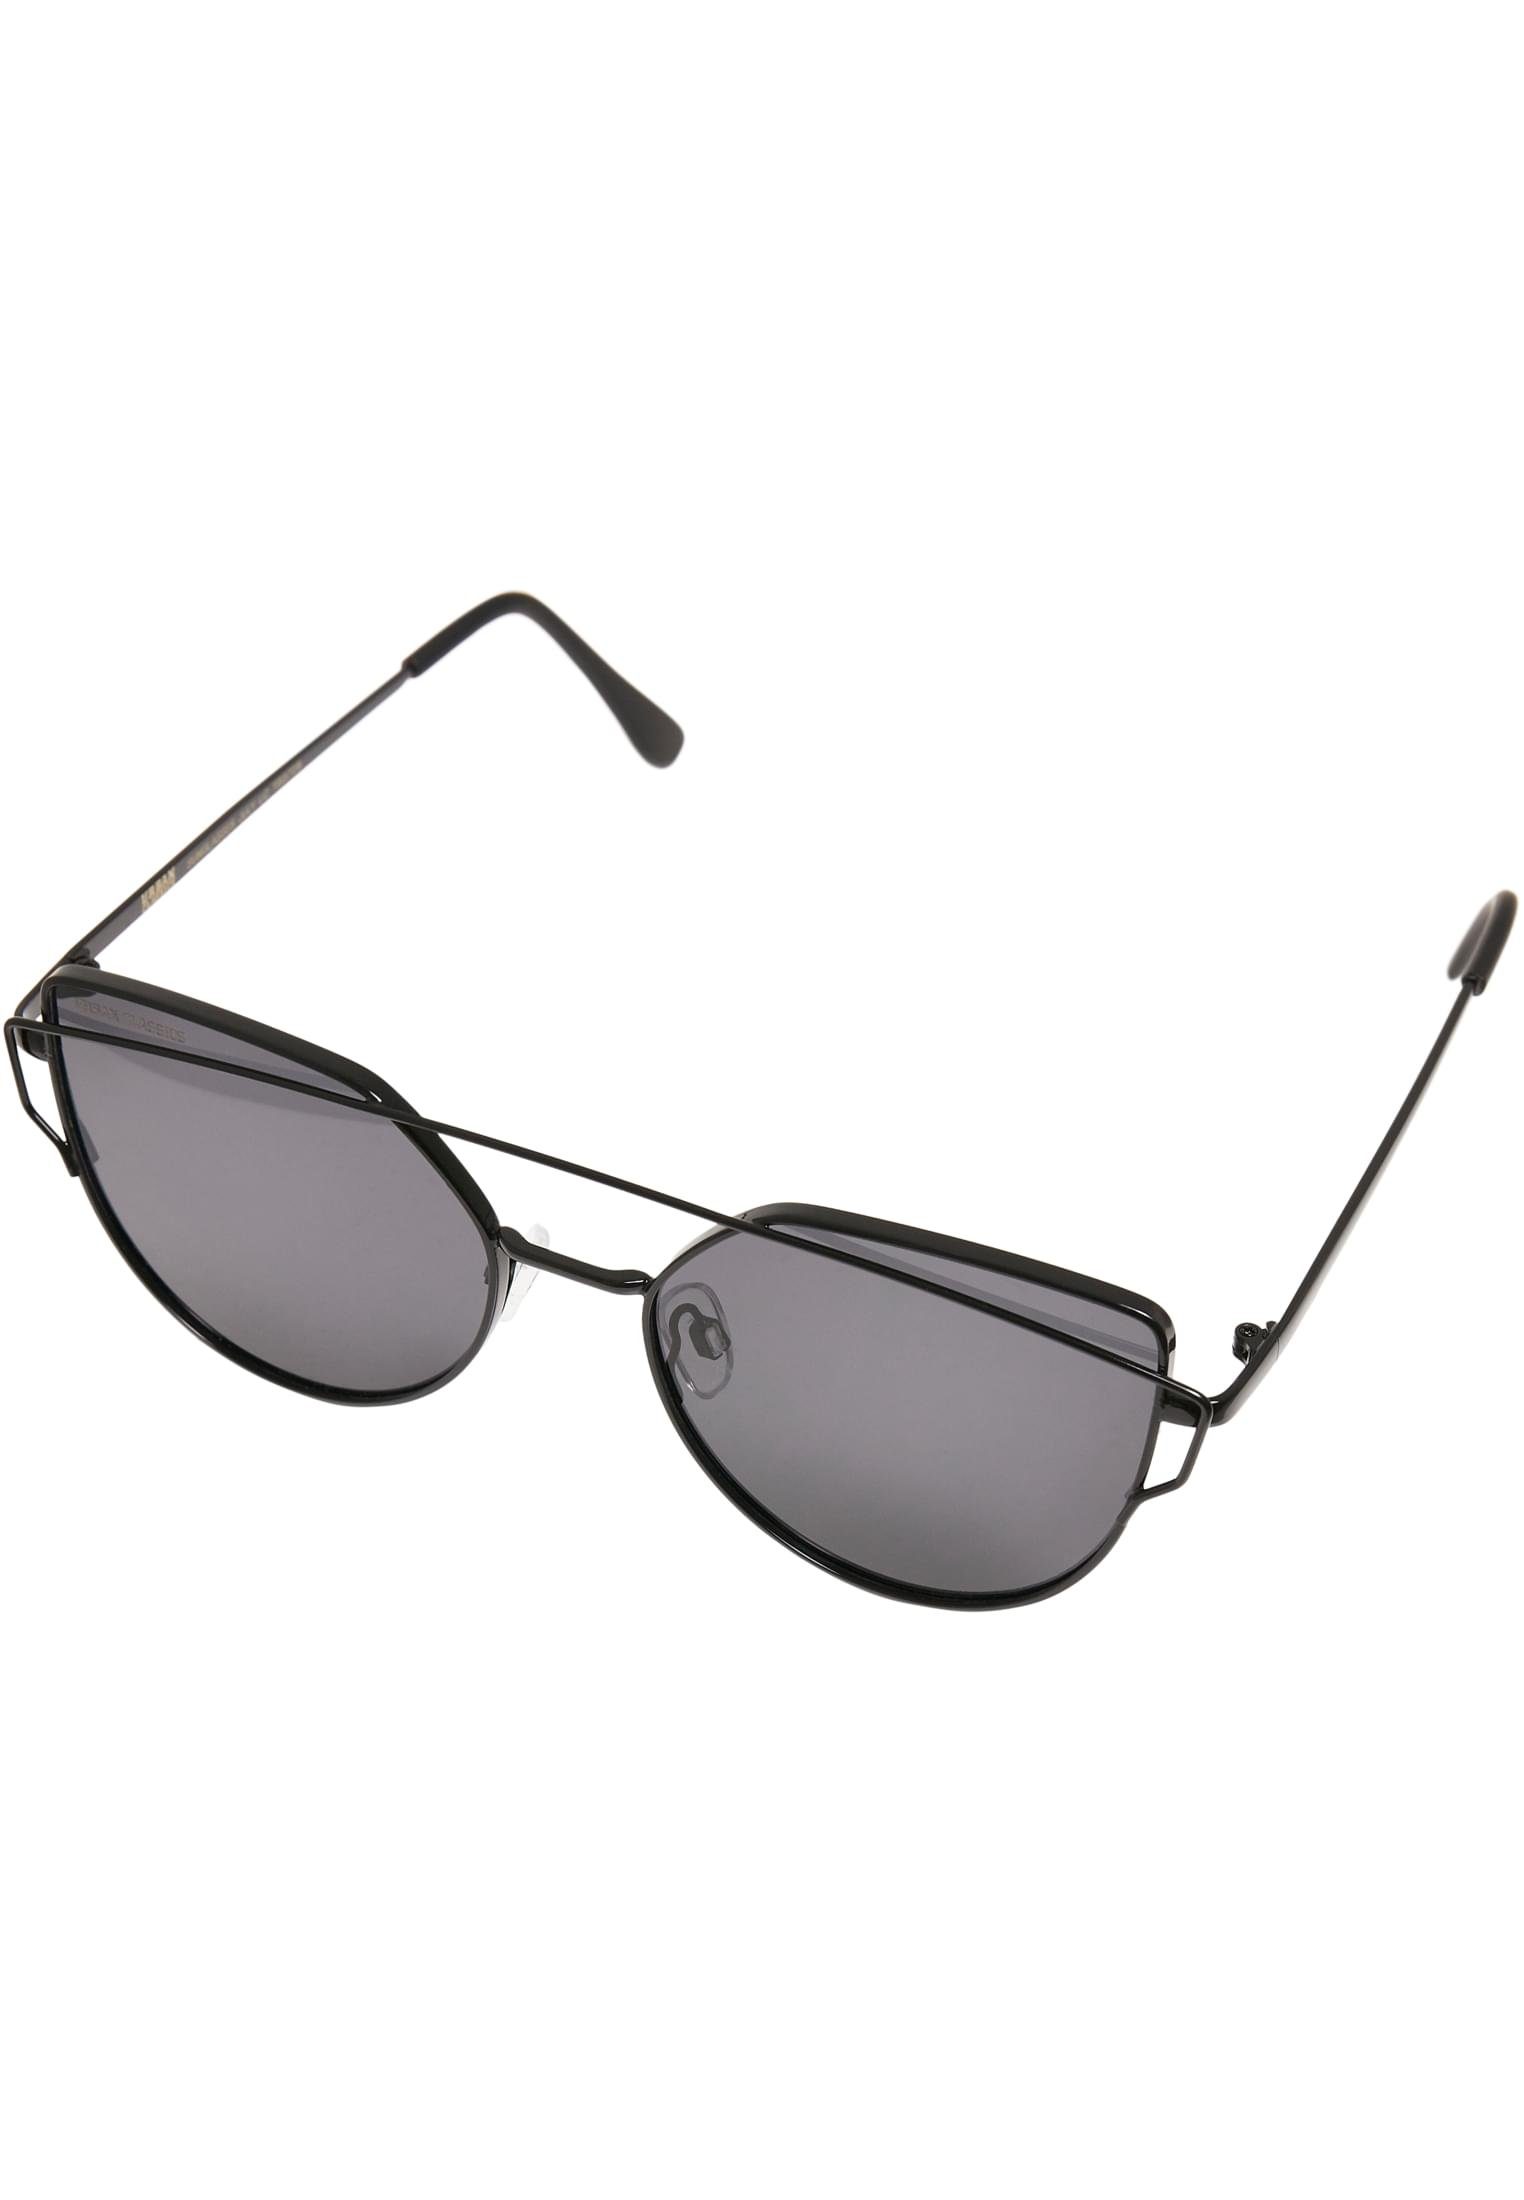 Accessoires CLASSICS black UC Sunglasses URBAN Sonnenbrille July